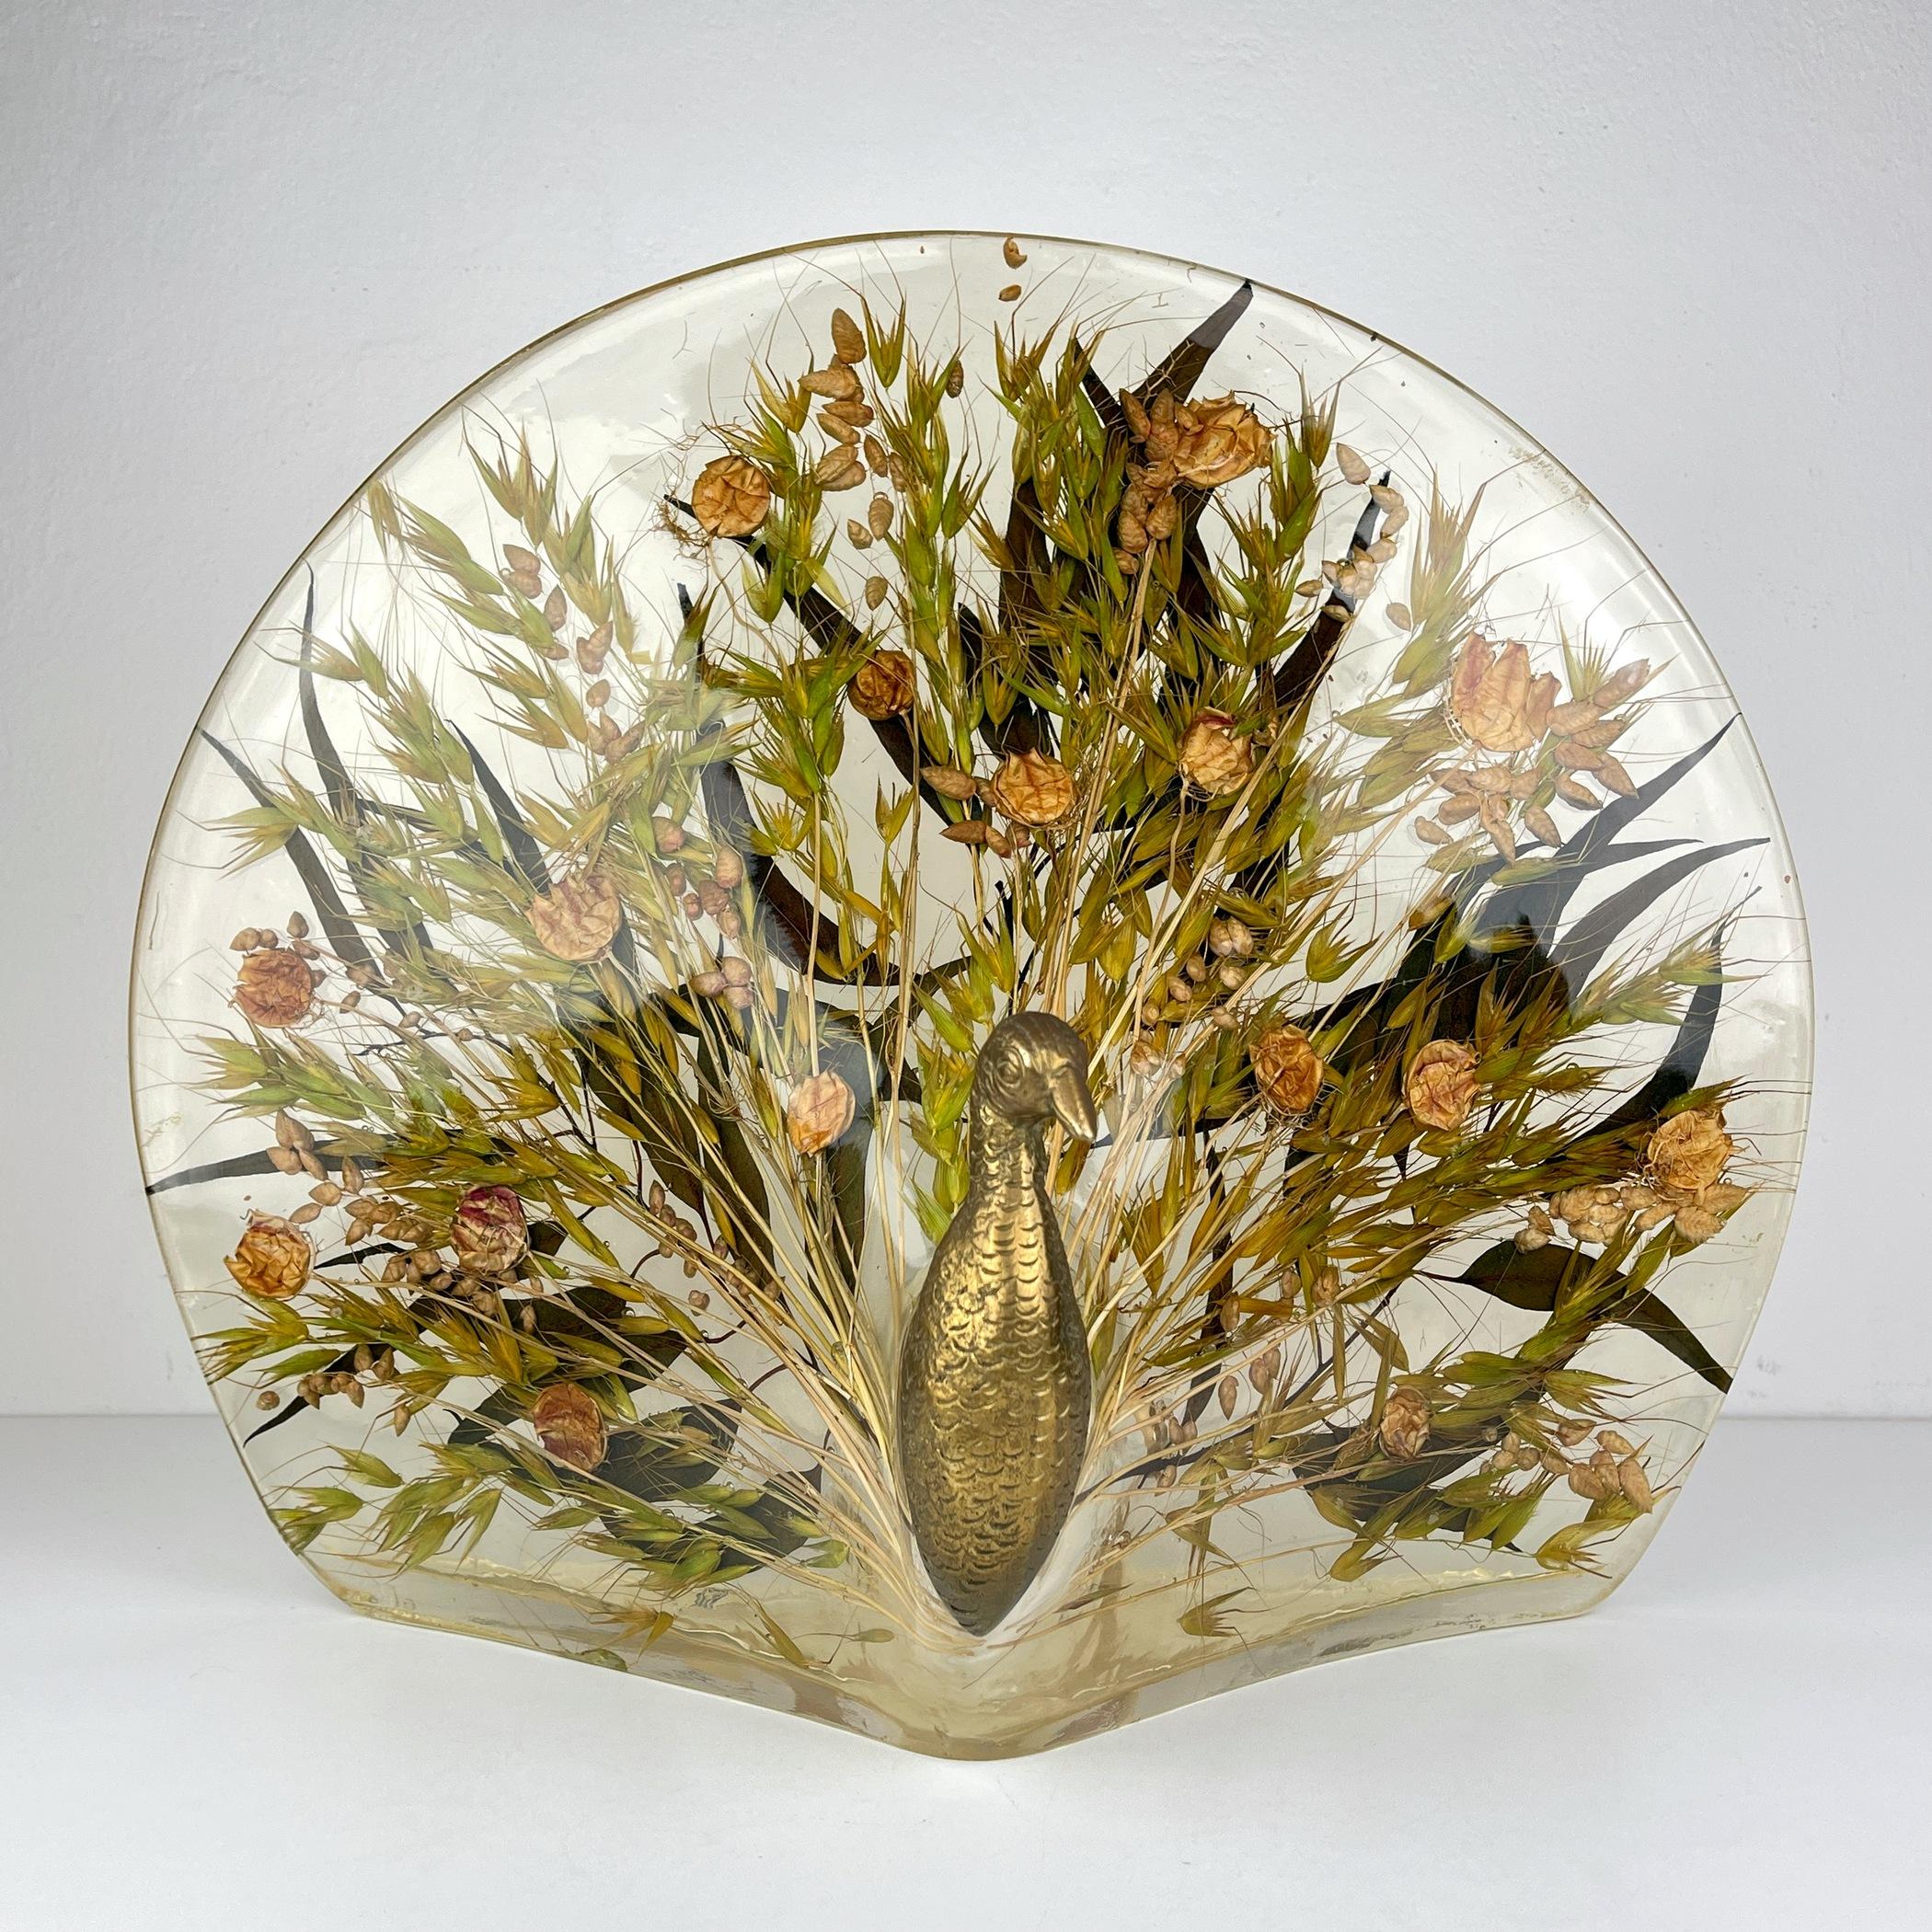 Voici la rare et exquise lampe de table Peacock, créée par Riccardo Marzi RM au cours de la vibrante période des années 1980. Cette lampe est une véritable merveille, dotée d'un abat-jour en résine transparente infusée avec de véritables feuilles et